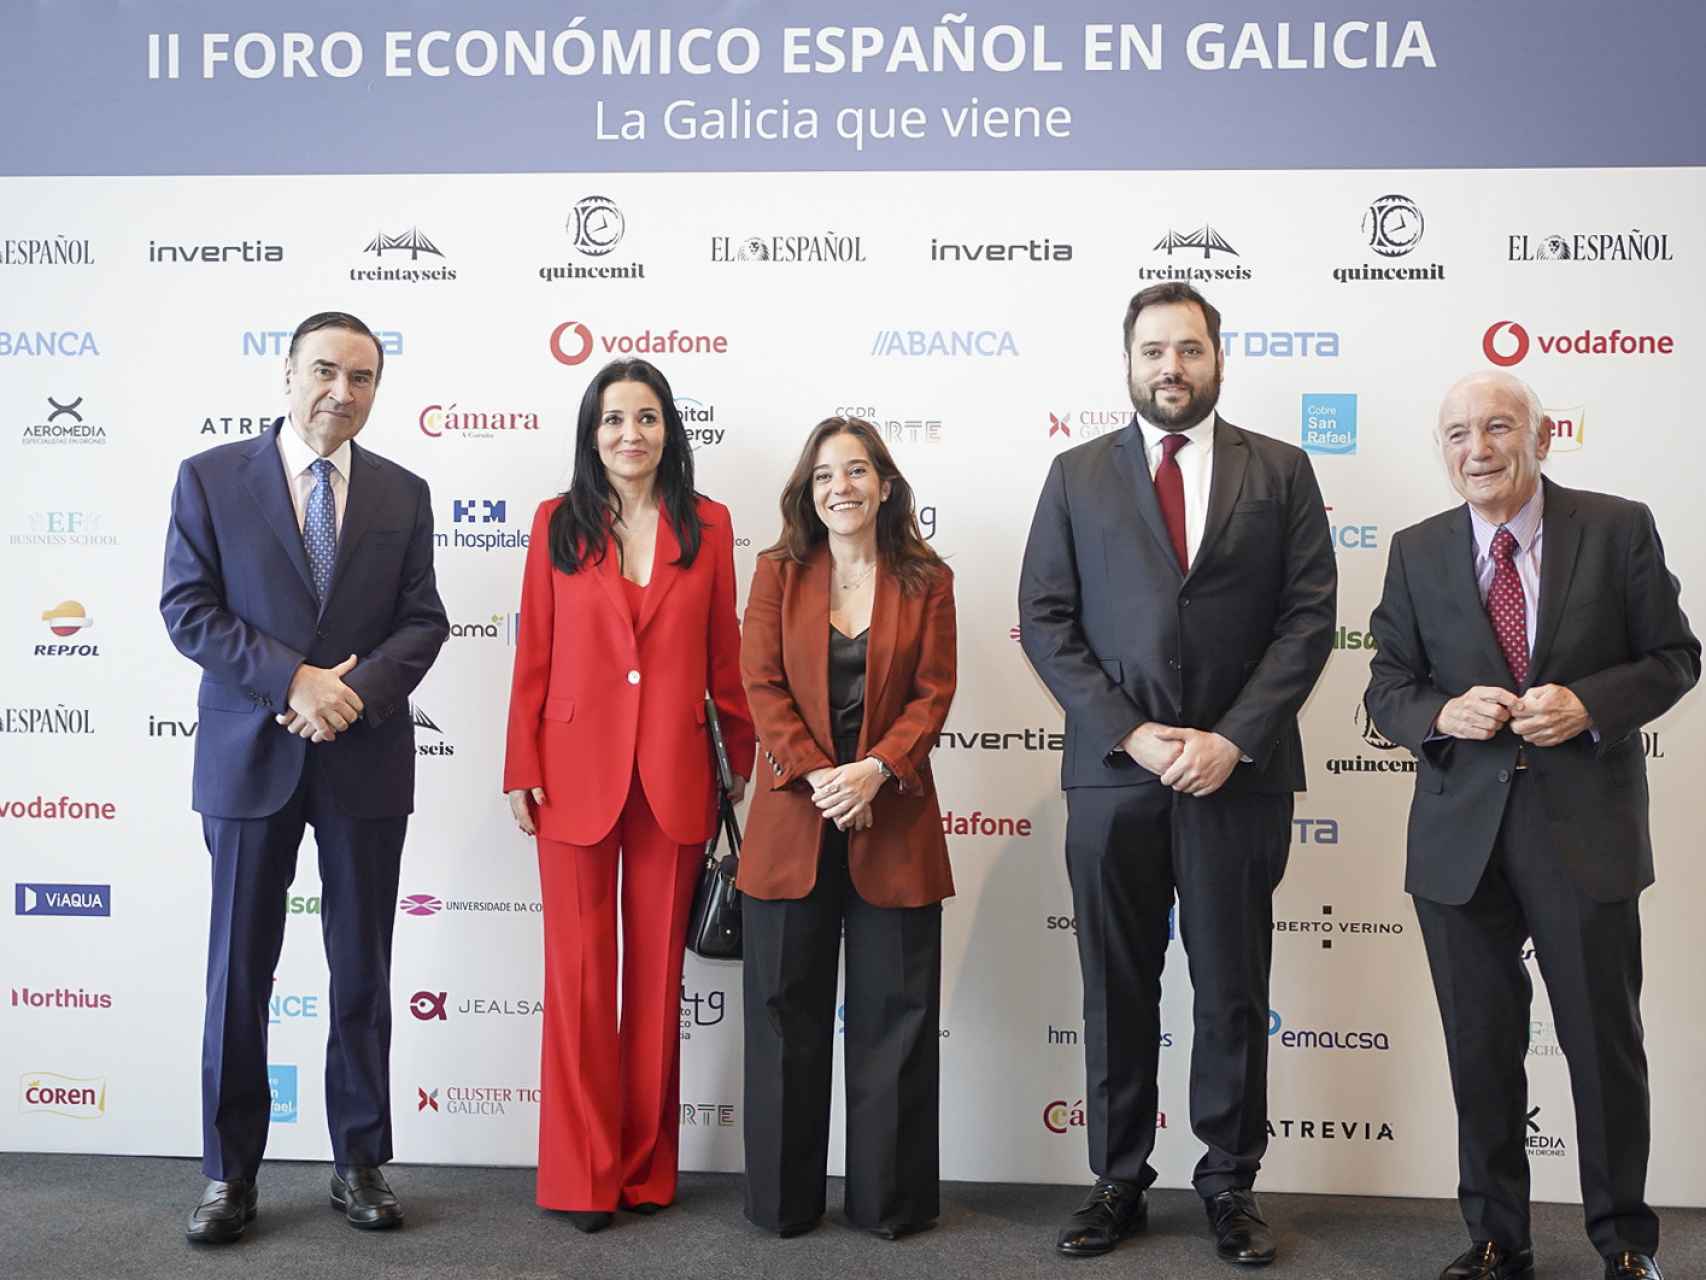 Primera jornada del II Foro Económico Español en Galicia 'La Galicia que viene'